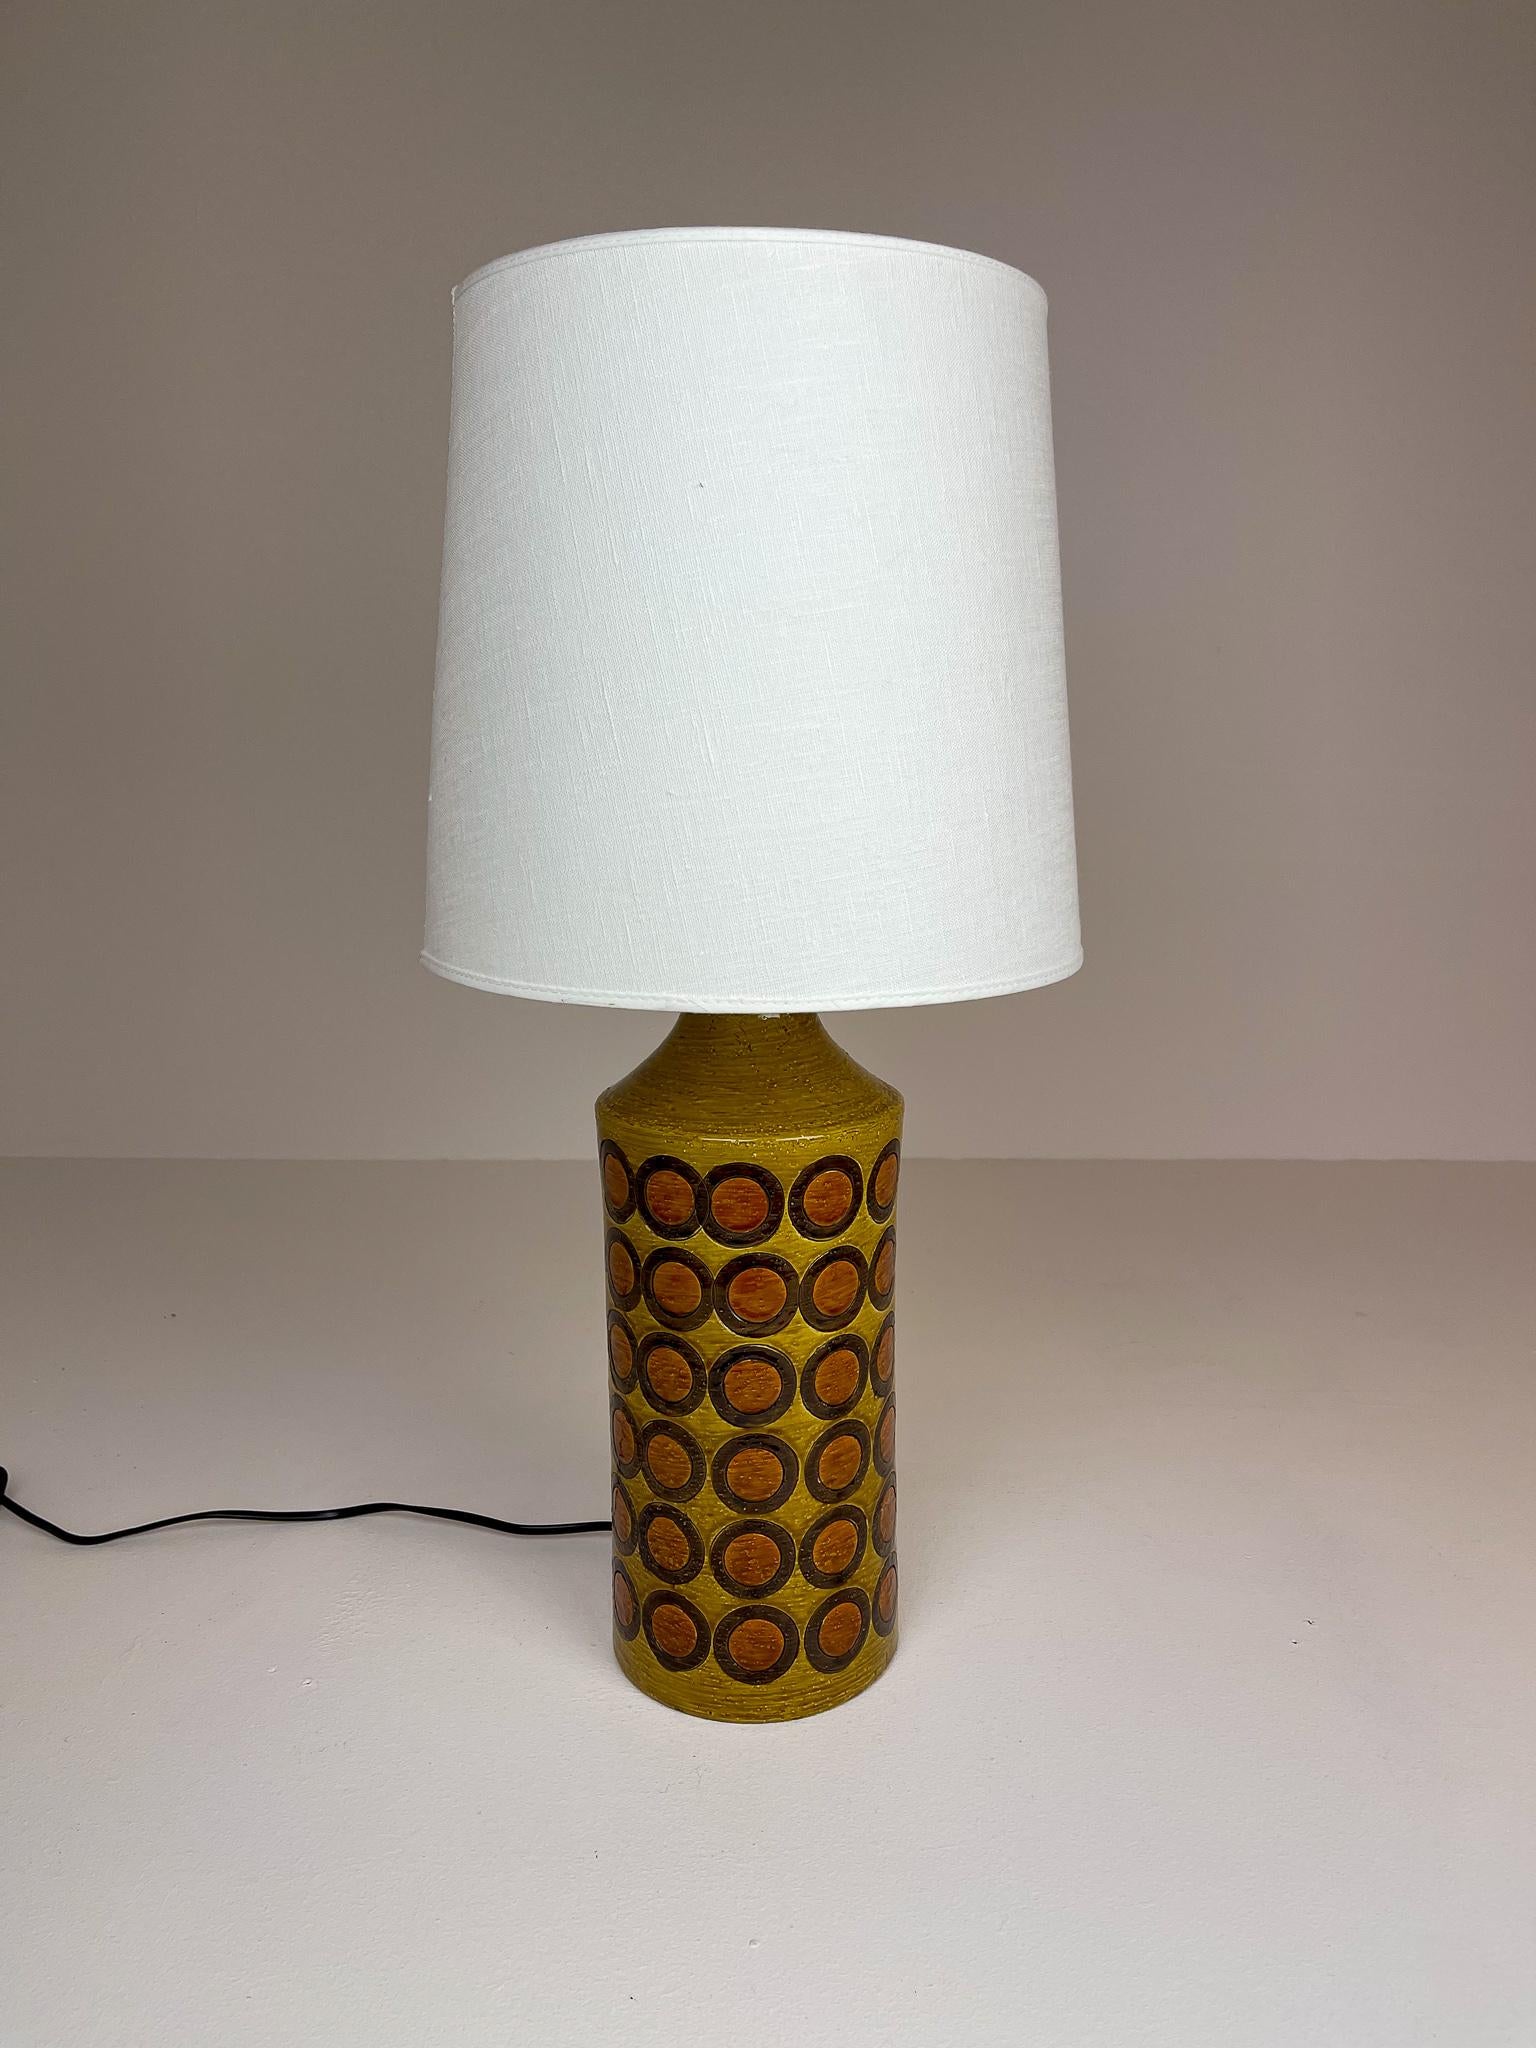 Cette lampe de table en céramique a été produite par Bitossi Italie pour la fabrique de lampes Bergboms en Suède. Le look iconique d'une lampe de table de la fin des années 1960 et du début des années 1970. 

Bon état vintage.

Dimensions : H 42